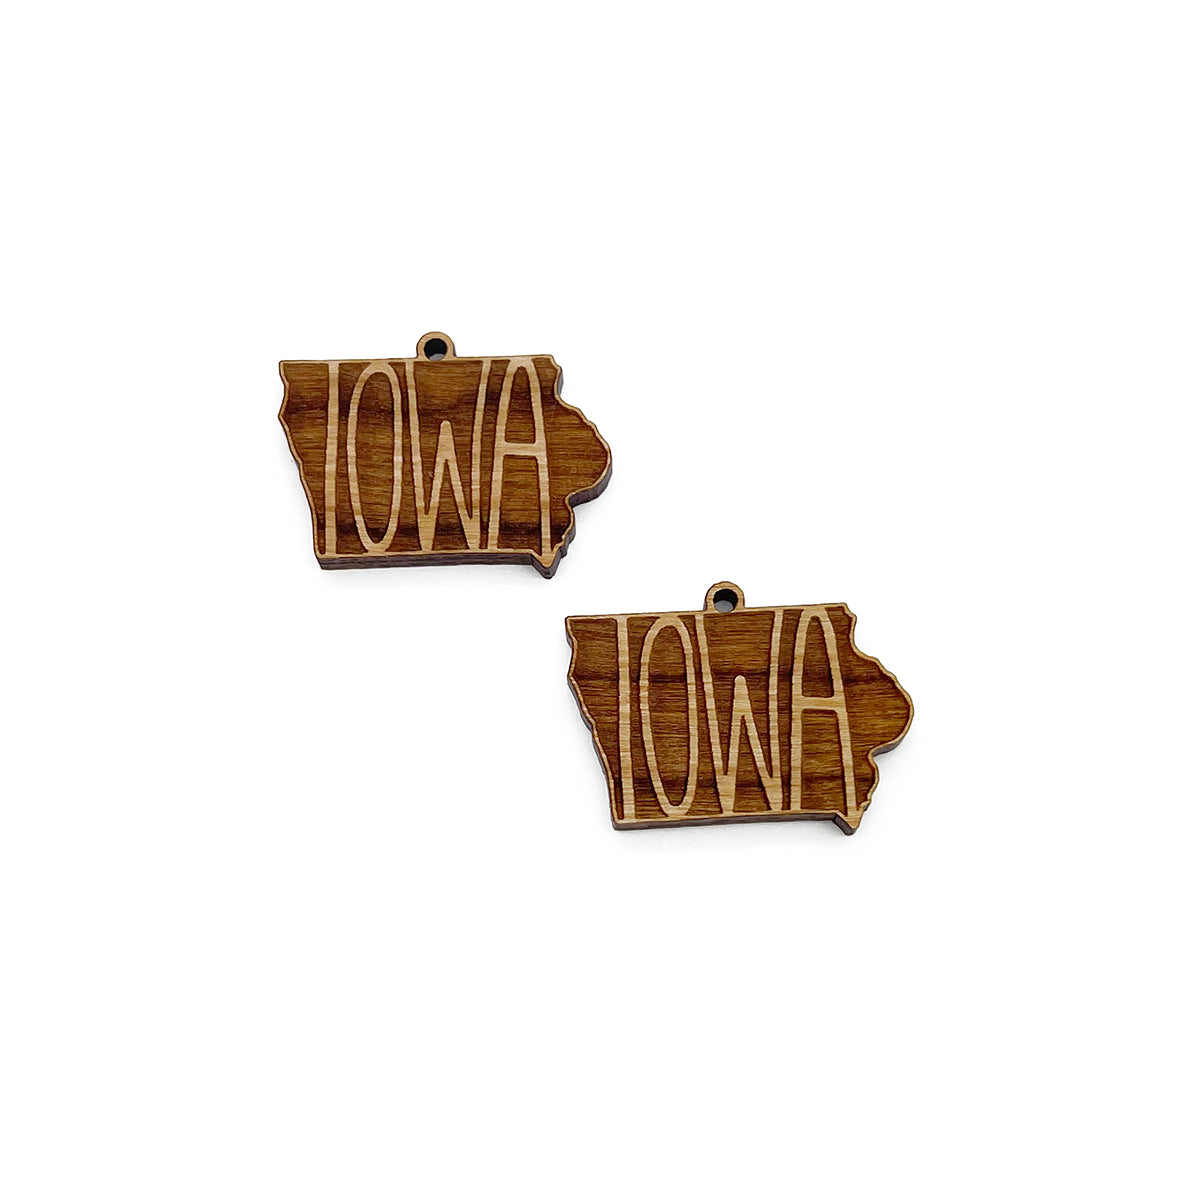 Iowa Engraved Wood Jewelry Charm Blanks